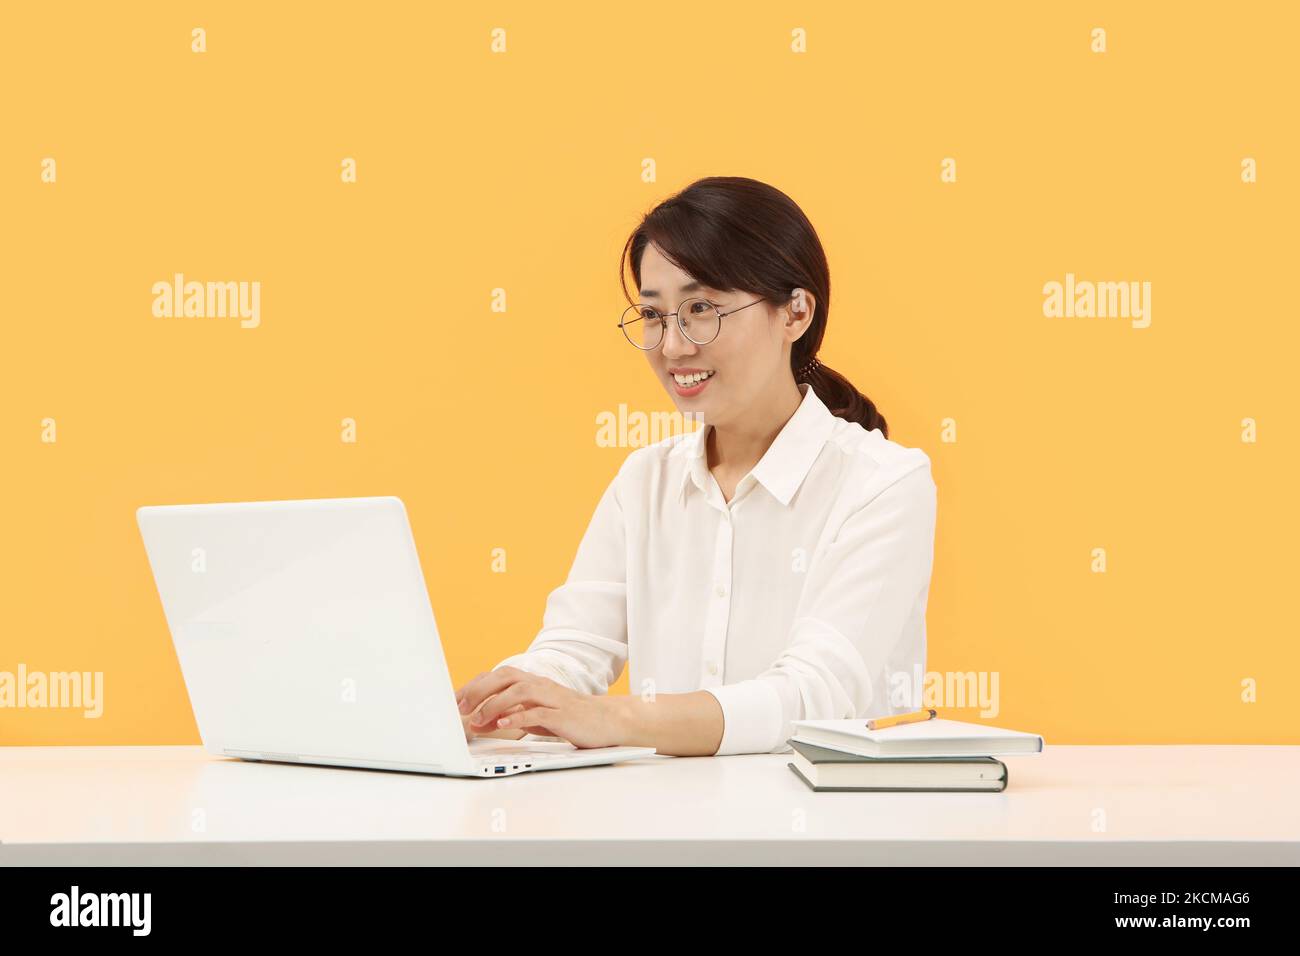 Moderne Büroangestellte Frau, die zu Hause oder im Büro freundlich lächelt und von zu Hause aus über das Internet online auf dem Laptop arbeitet Stockfoto